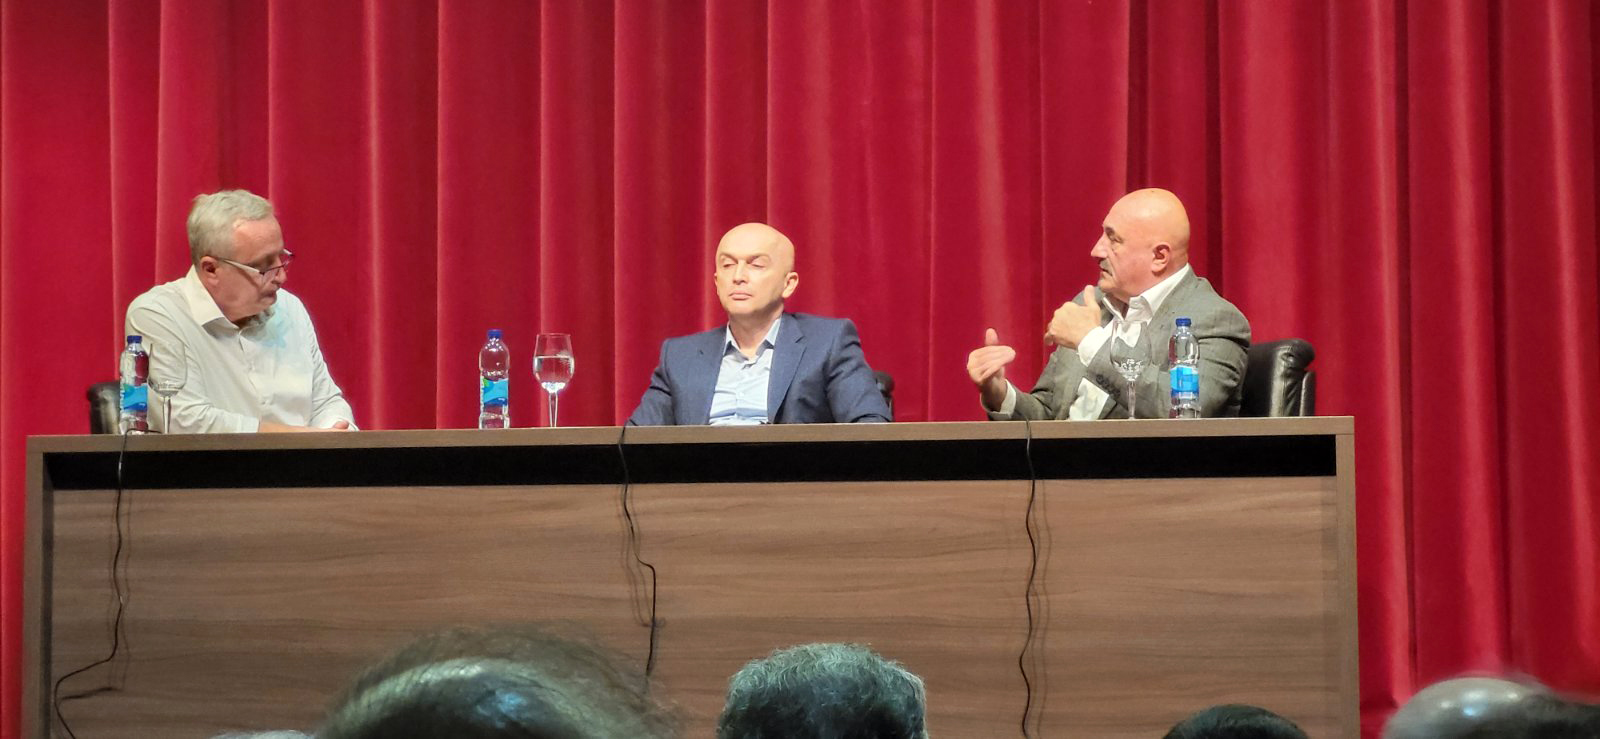 Advokat Goran Petronijević i profesor Srđan Perišić na panel-diskusiji "Suđenje Republici Srpskoj" u Bijeljini